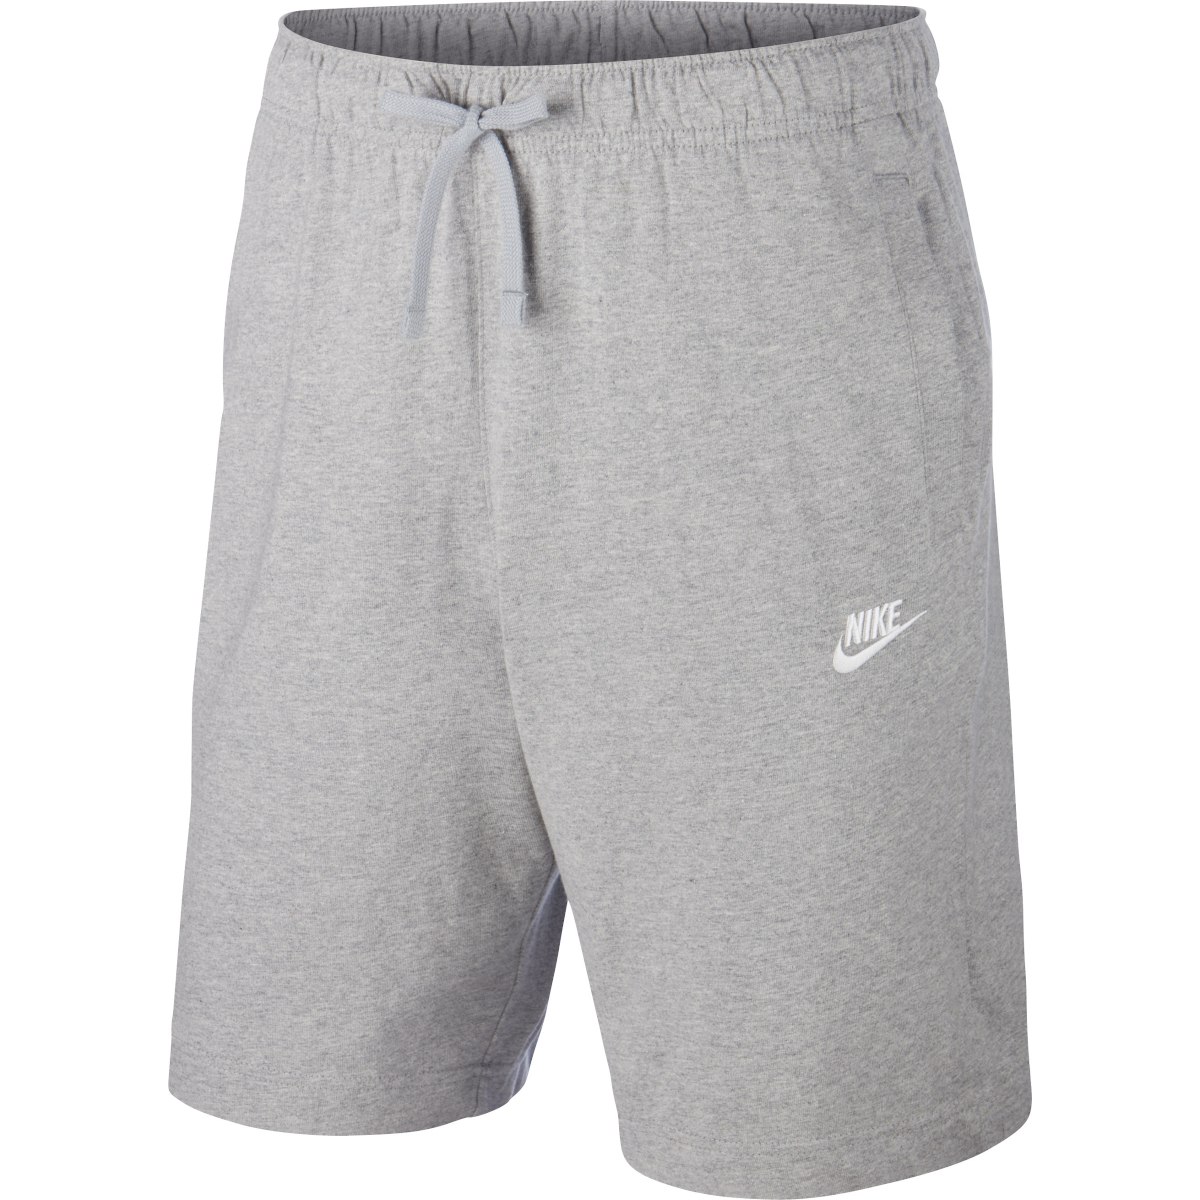 Immagine prodotto da Nike Pantaloncini Uomo - Sportswear Club - dark grey heather/white BV2772-063